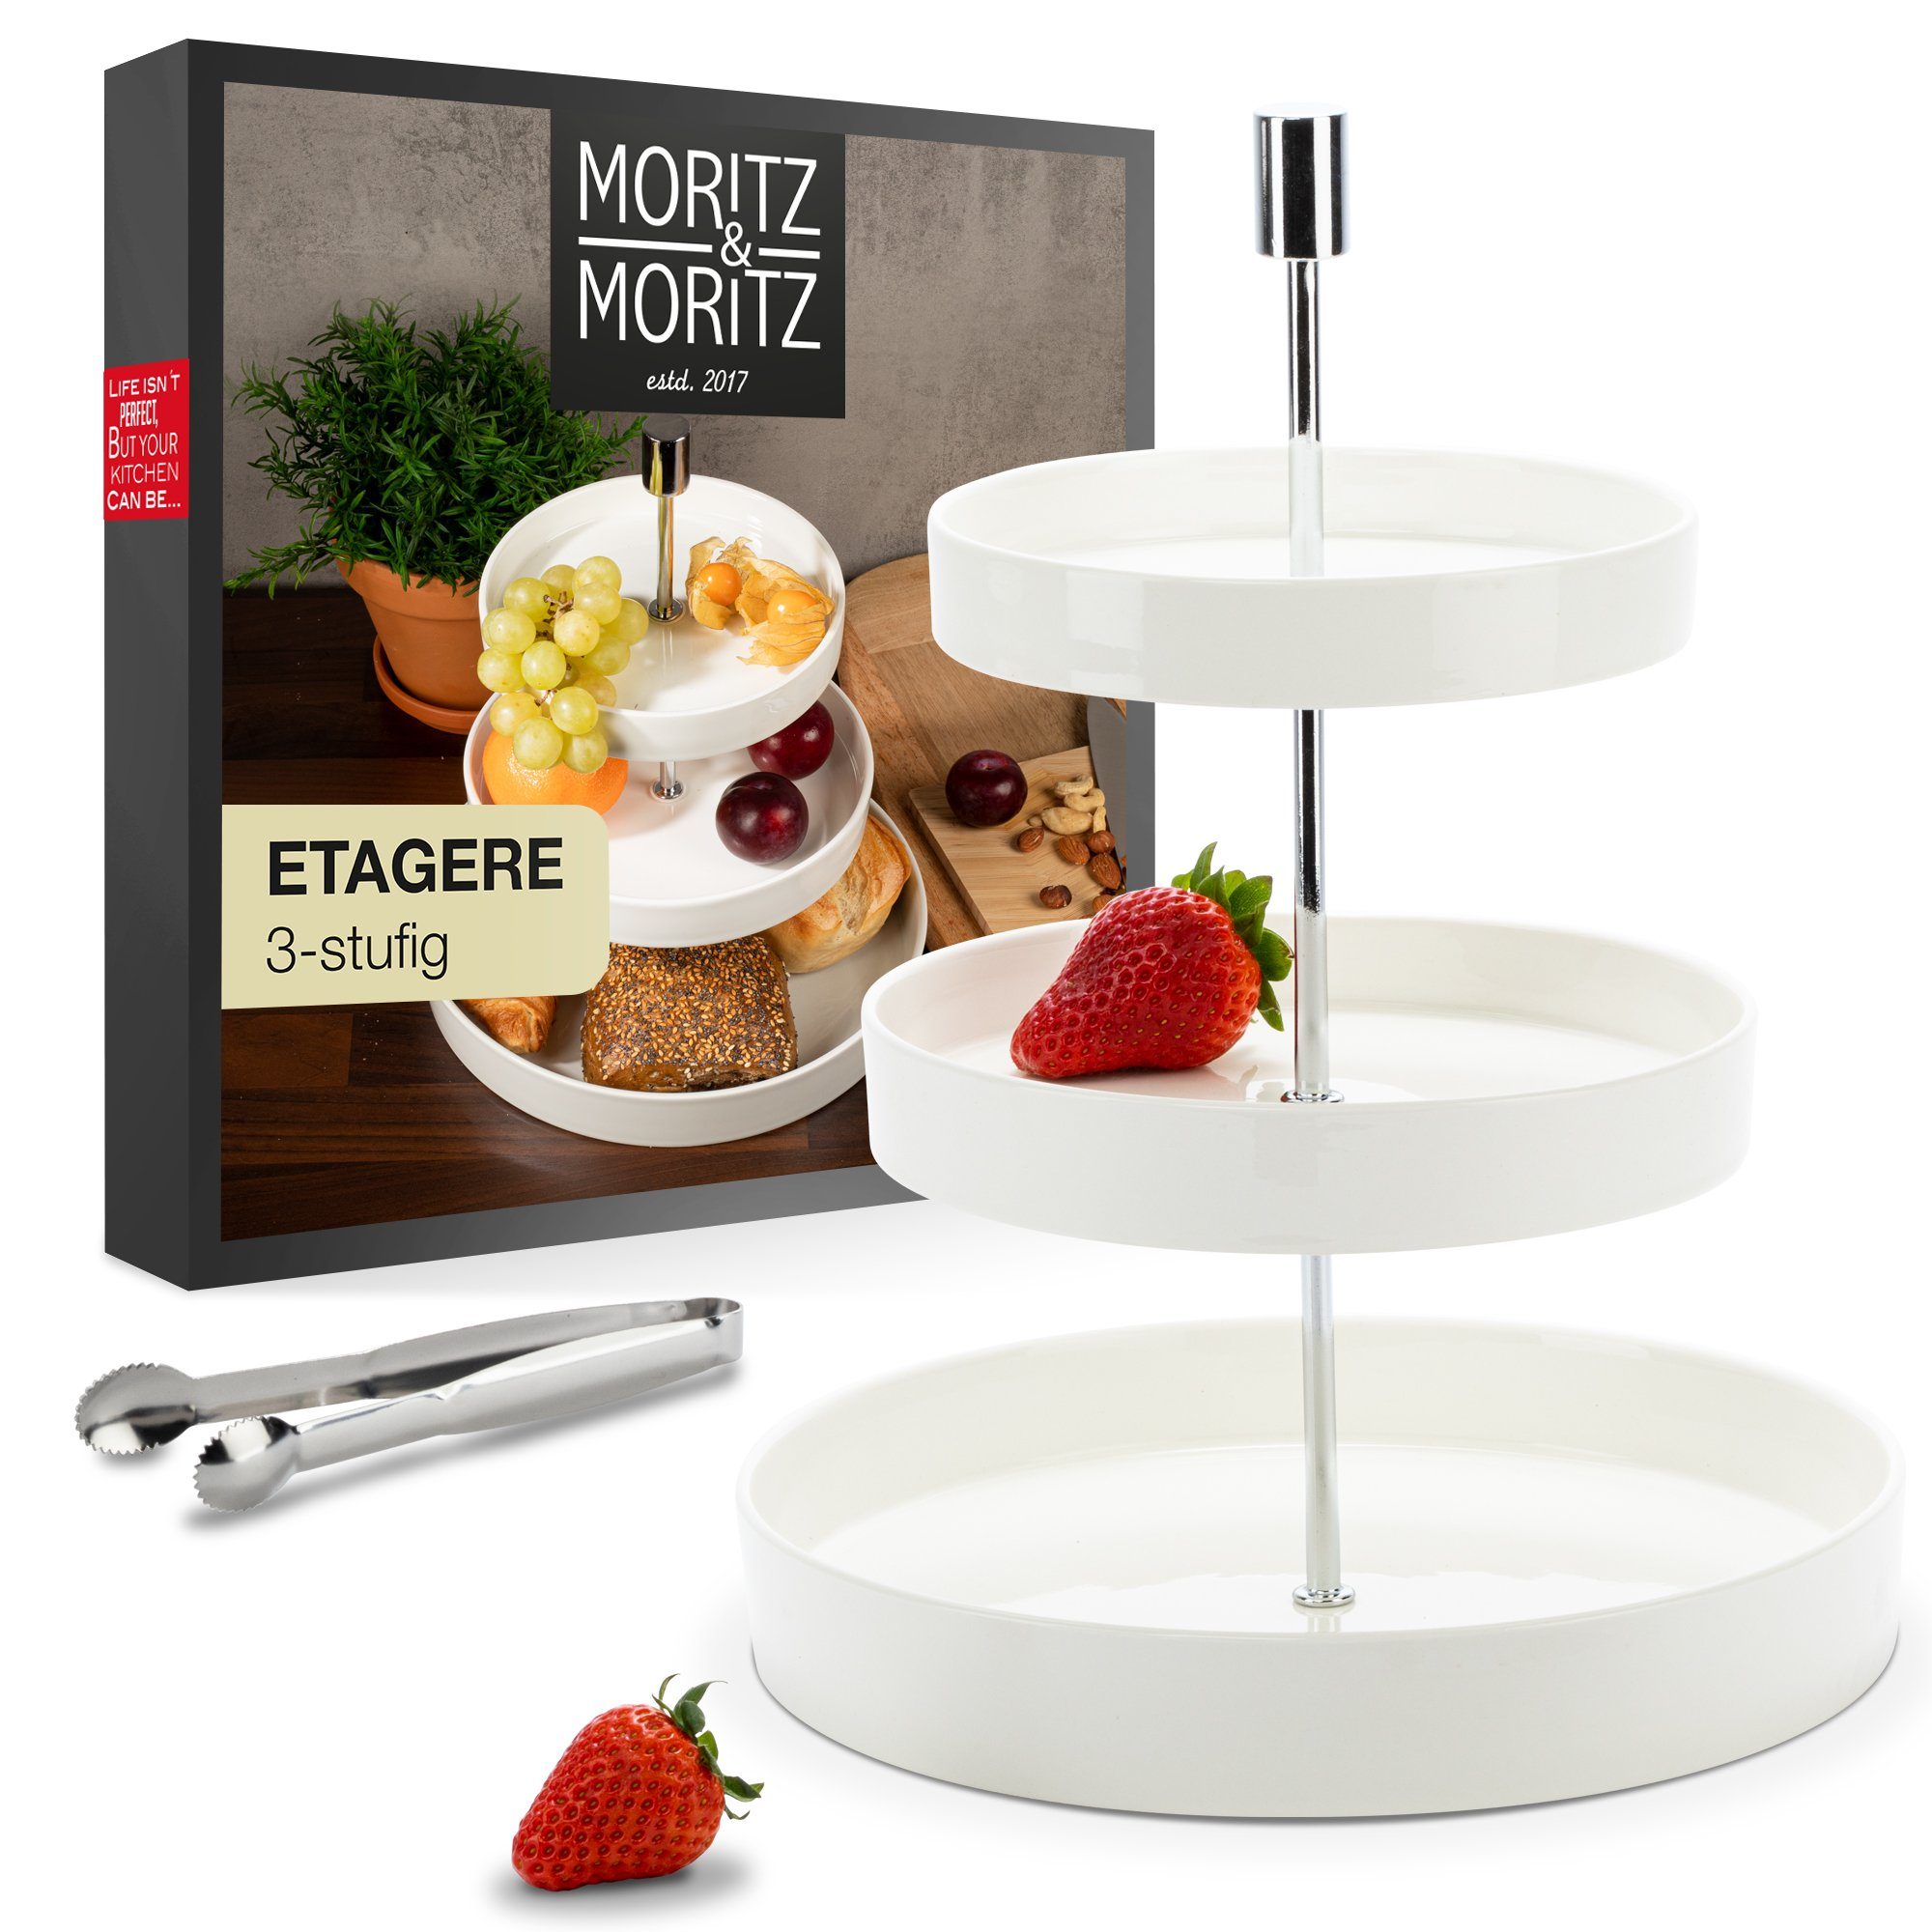 Moritz & Moritz Etagere Obst Etagere, Porzellan, (3 Etagen), Perfekt als Obstschale für Obst Aufbewahrung, Muffins und Cupcakes